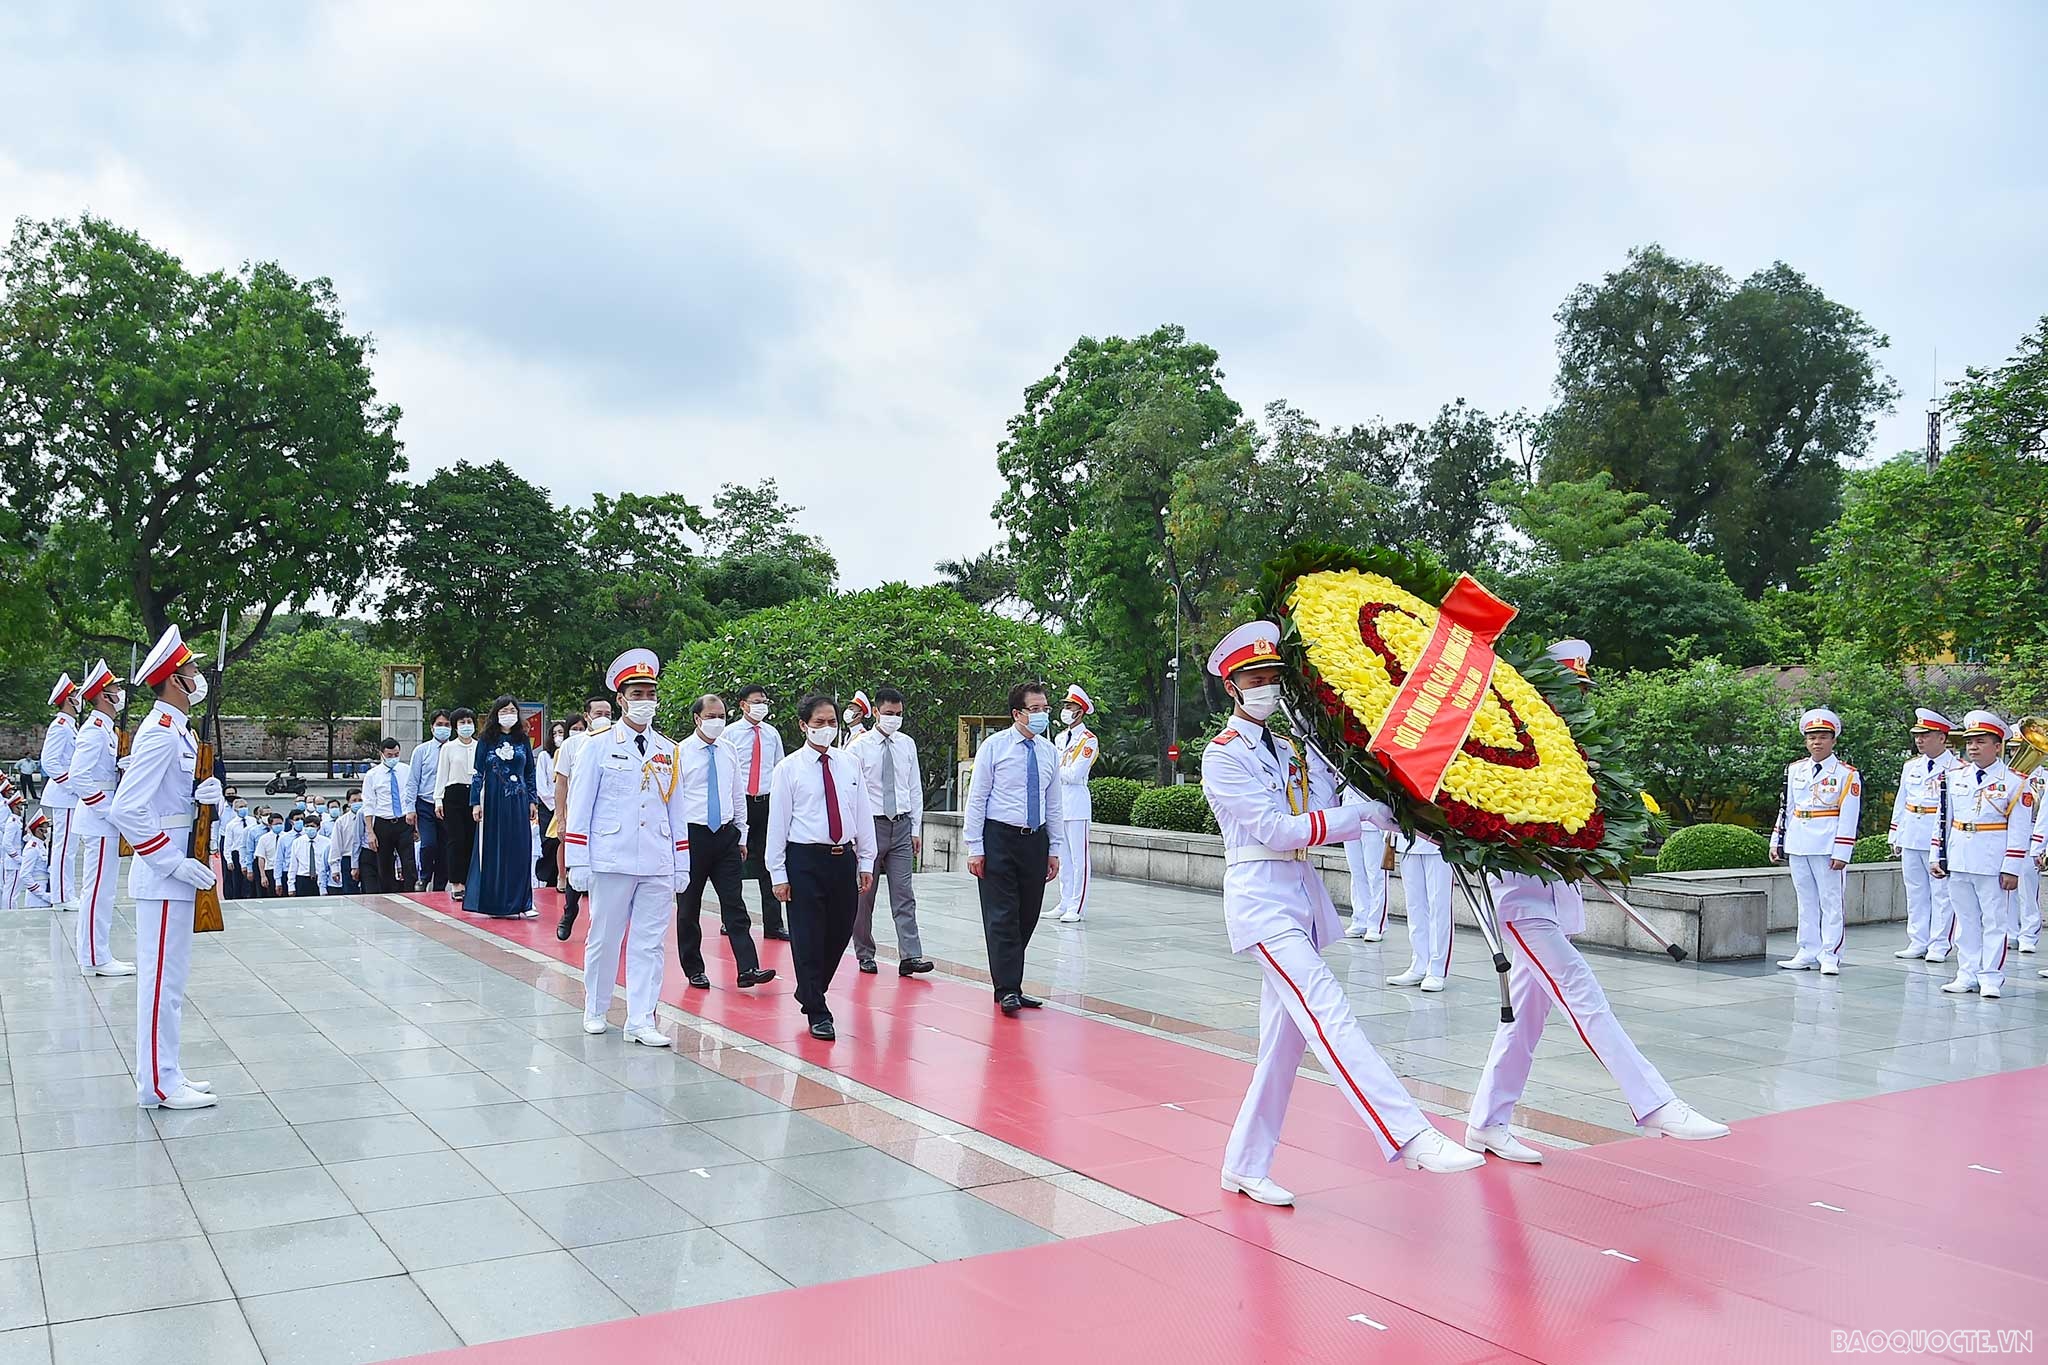 Đoàn Bộ Ngoại giao viếng Chủ tịch Hồ Chí Minh dịp kỷ niệm 131 năm Ngày sinh nhật của Người